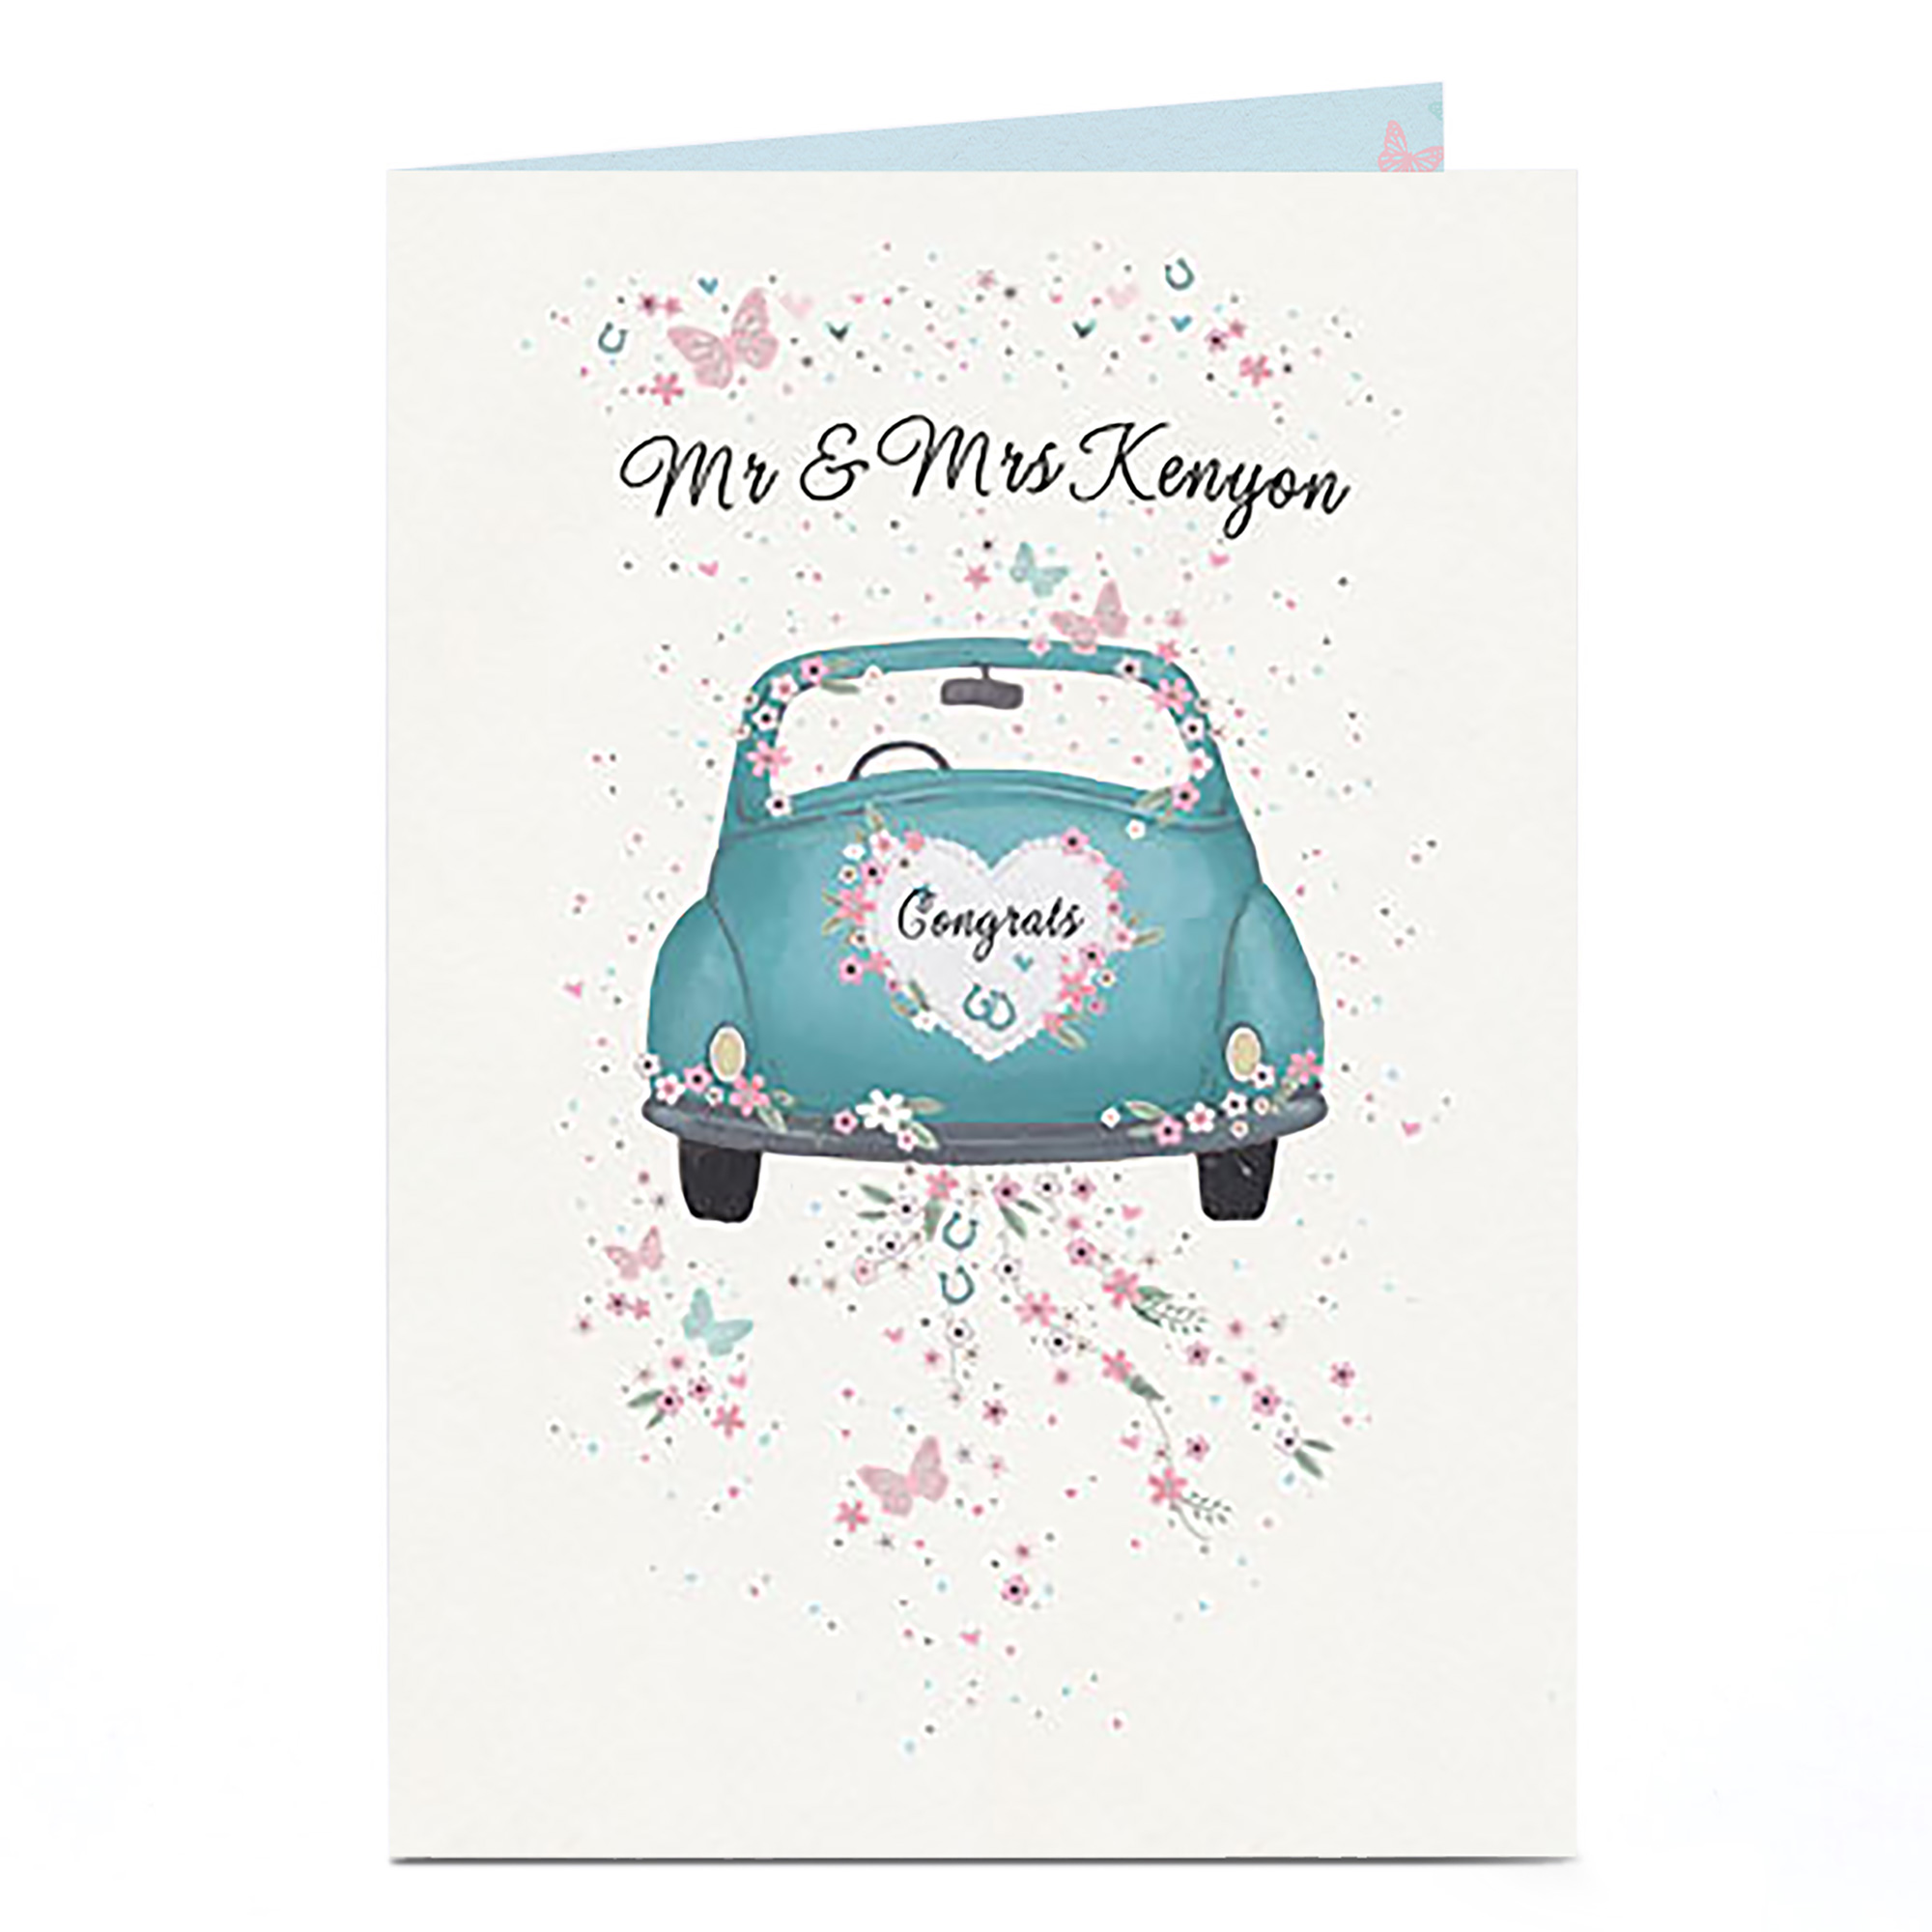 Personalised Wedding Card - Car & Confetti